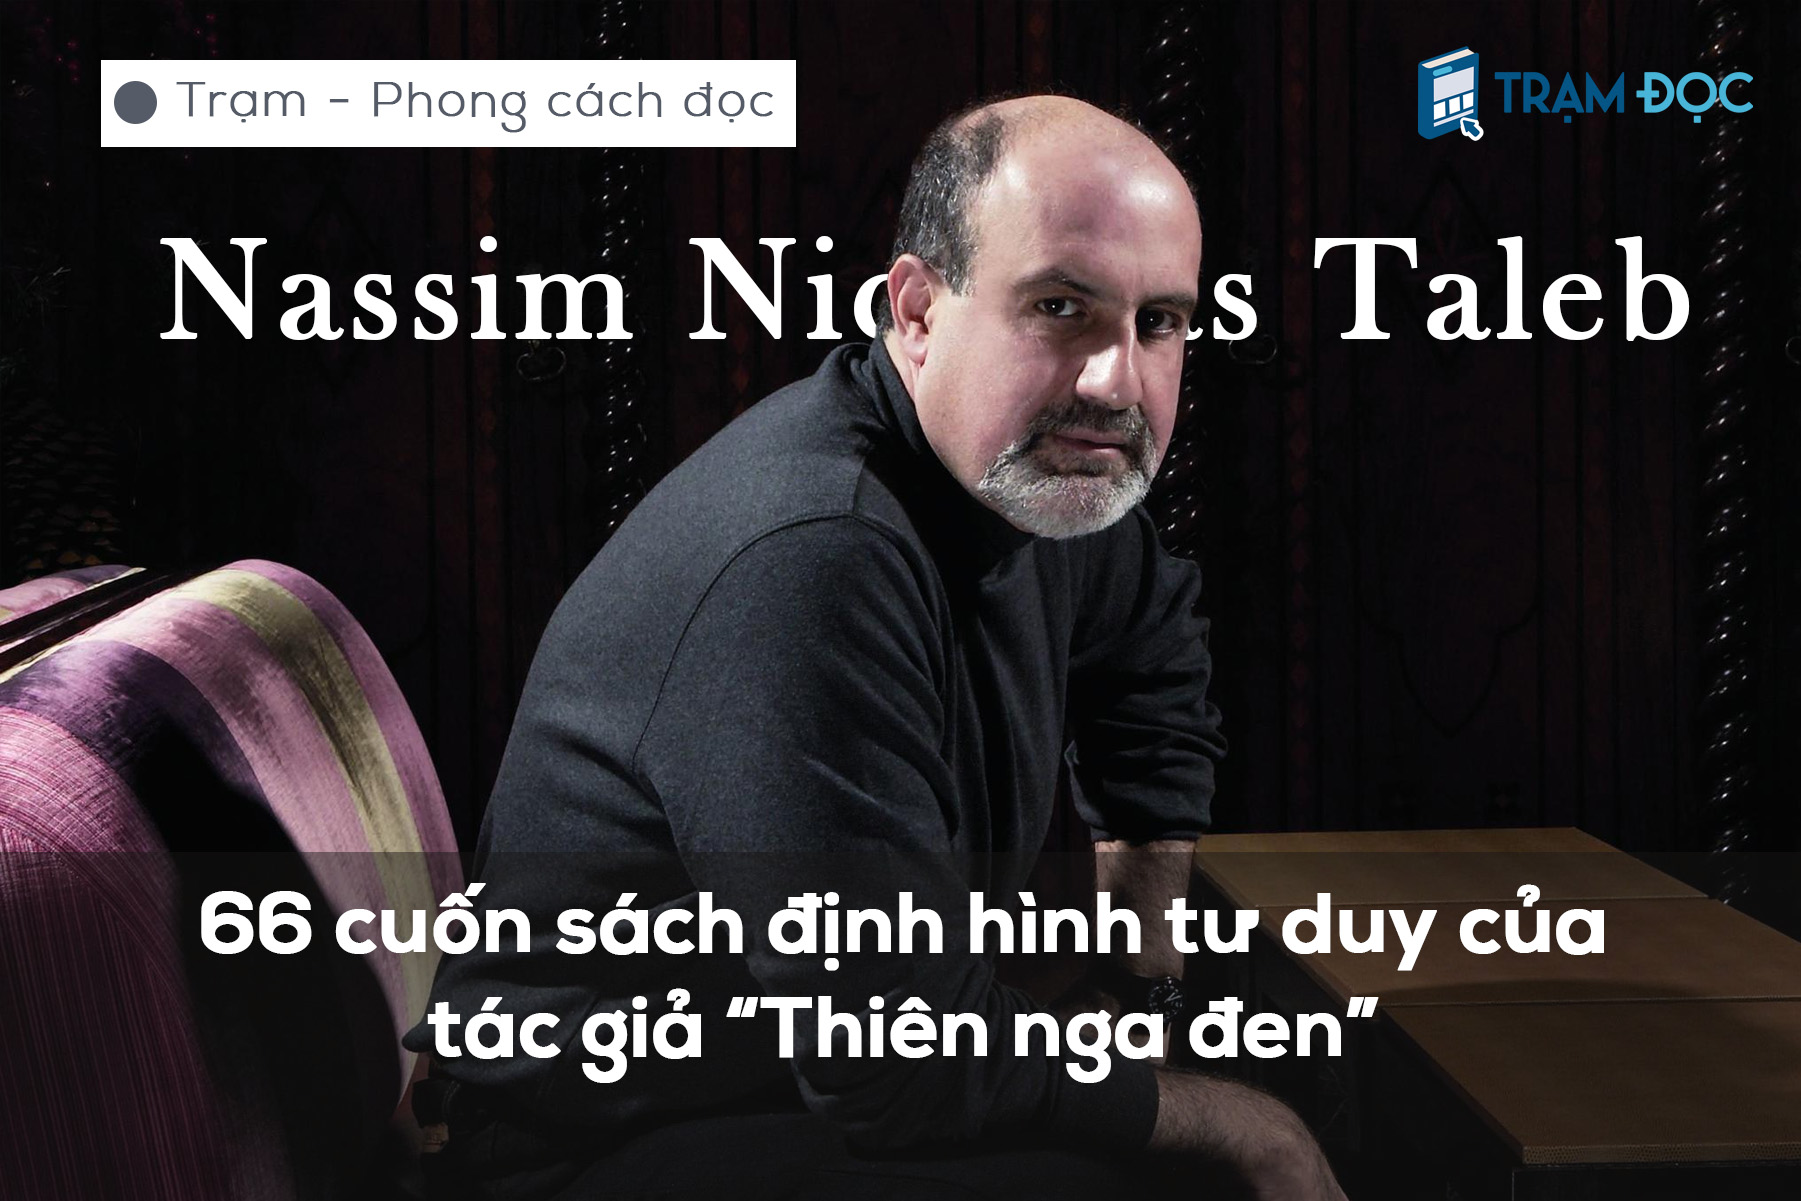 66 cuốn sách định hình tư duy của Nassim Taleb - tác giả “Thiên nga đen”